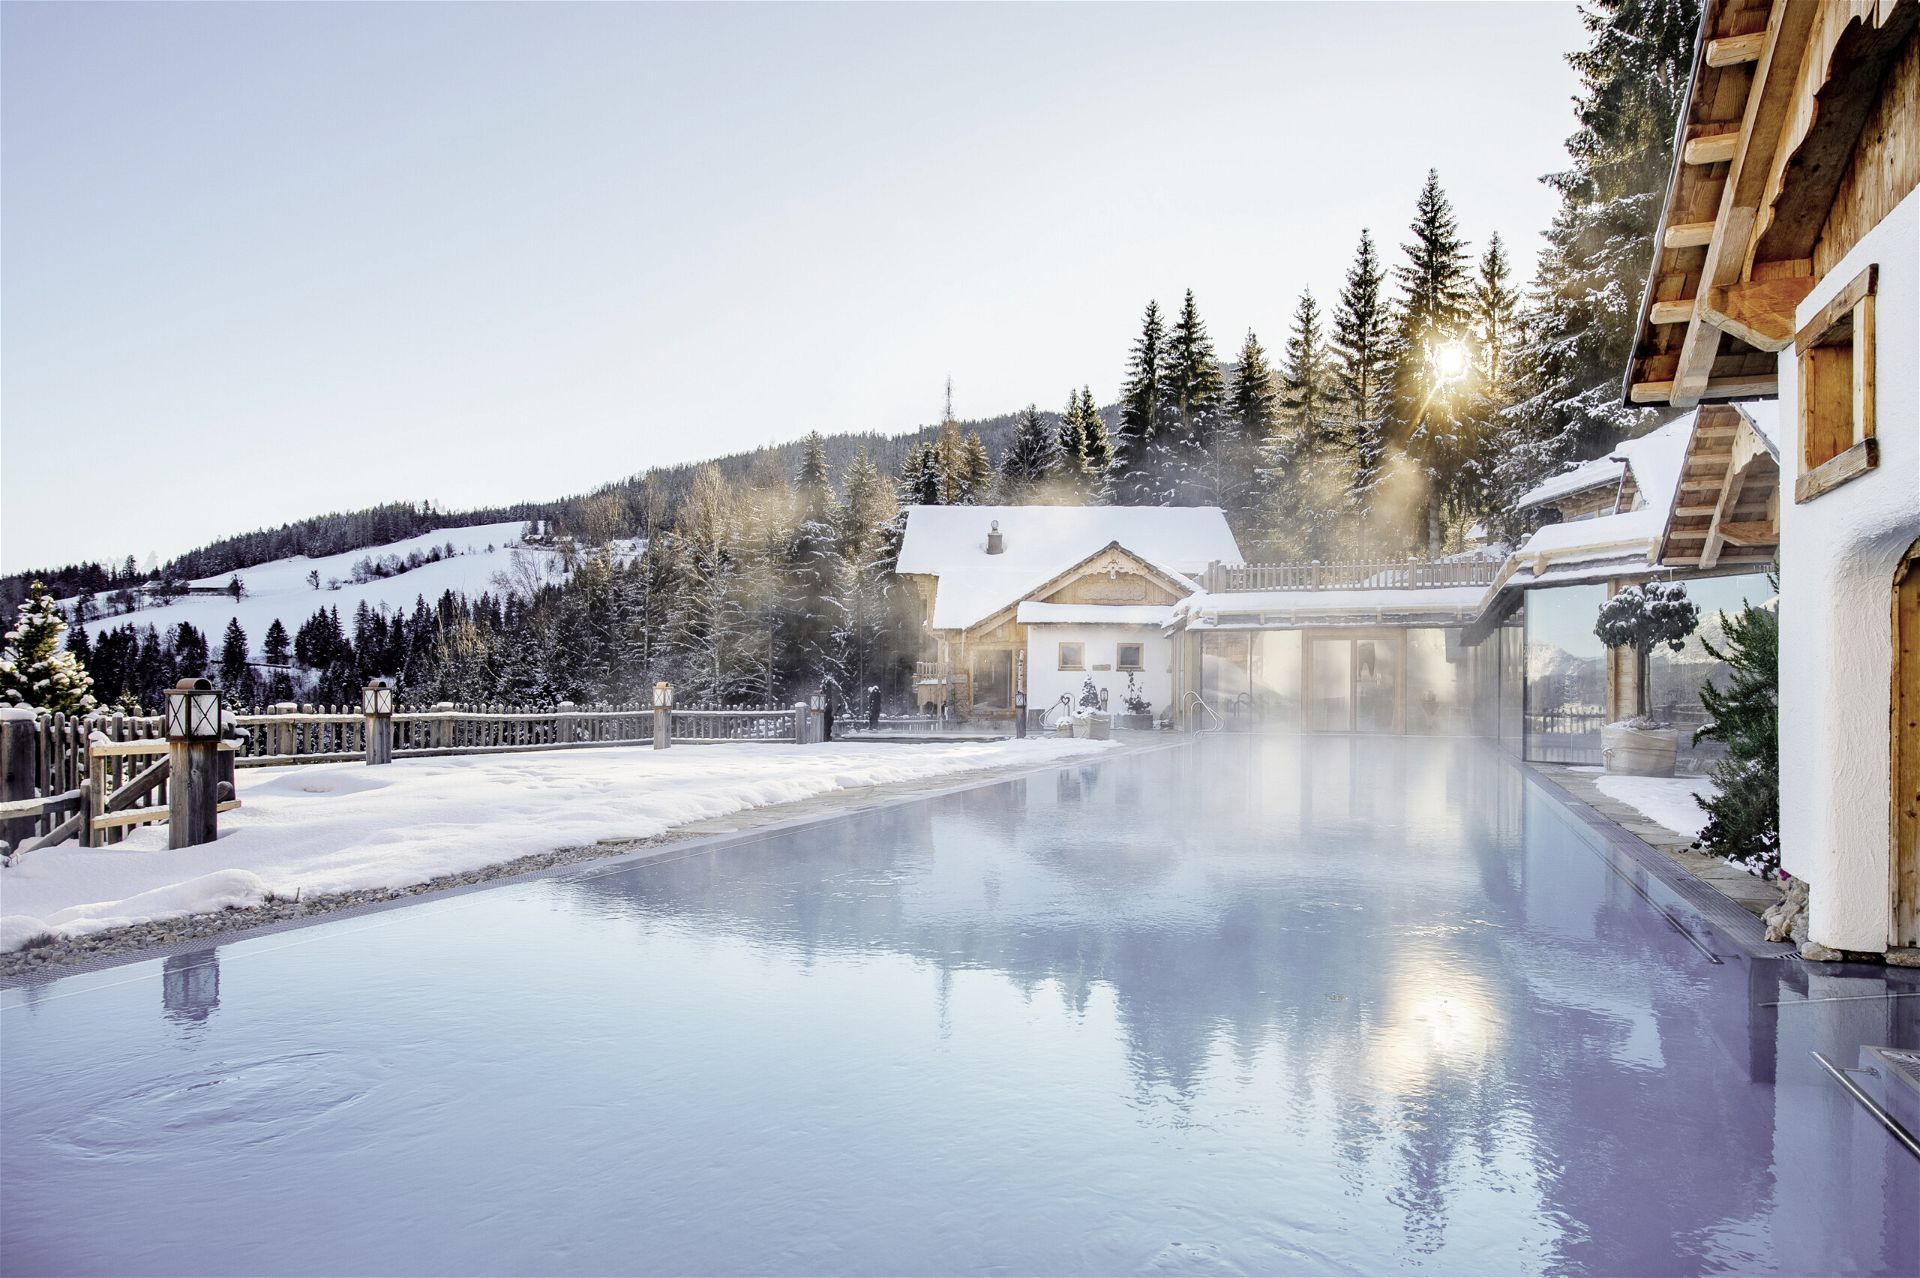 Sponsored, Natur- und Wellnesshotel Höflehner****S , winter, day spa